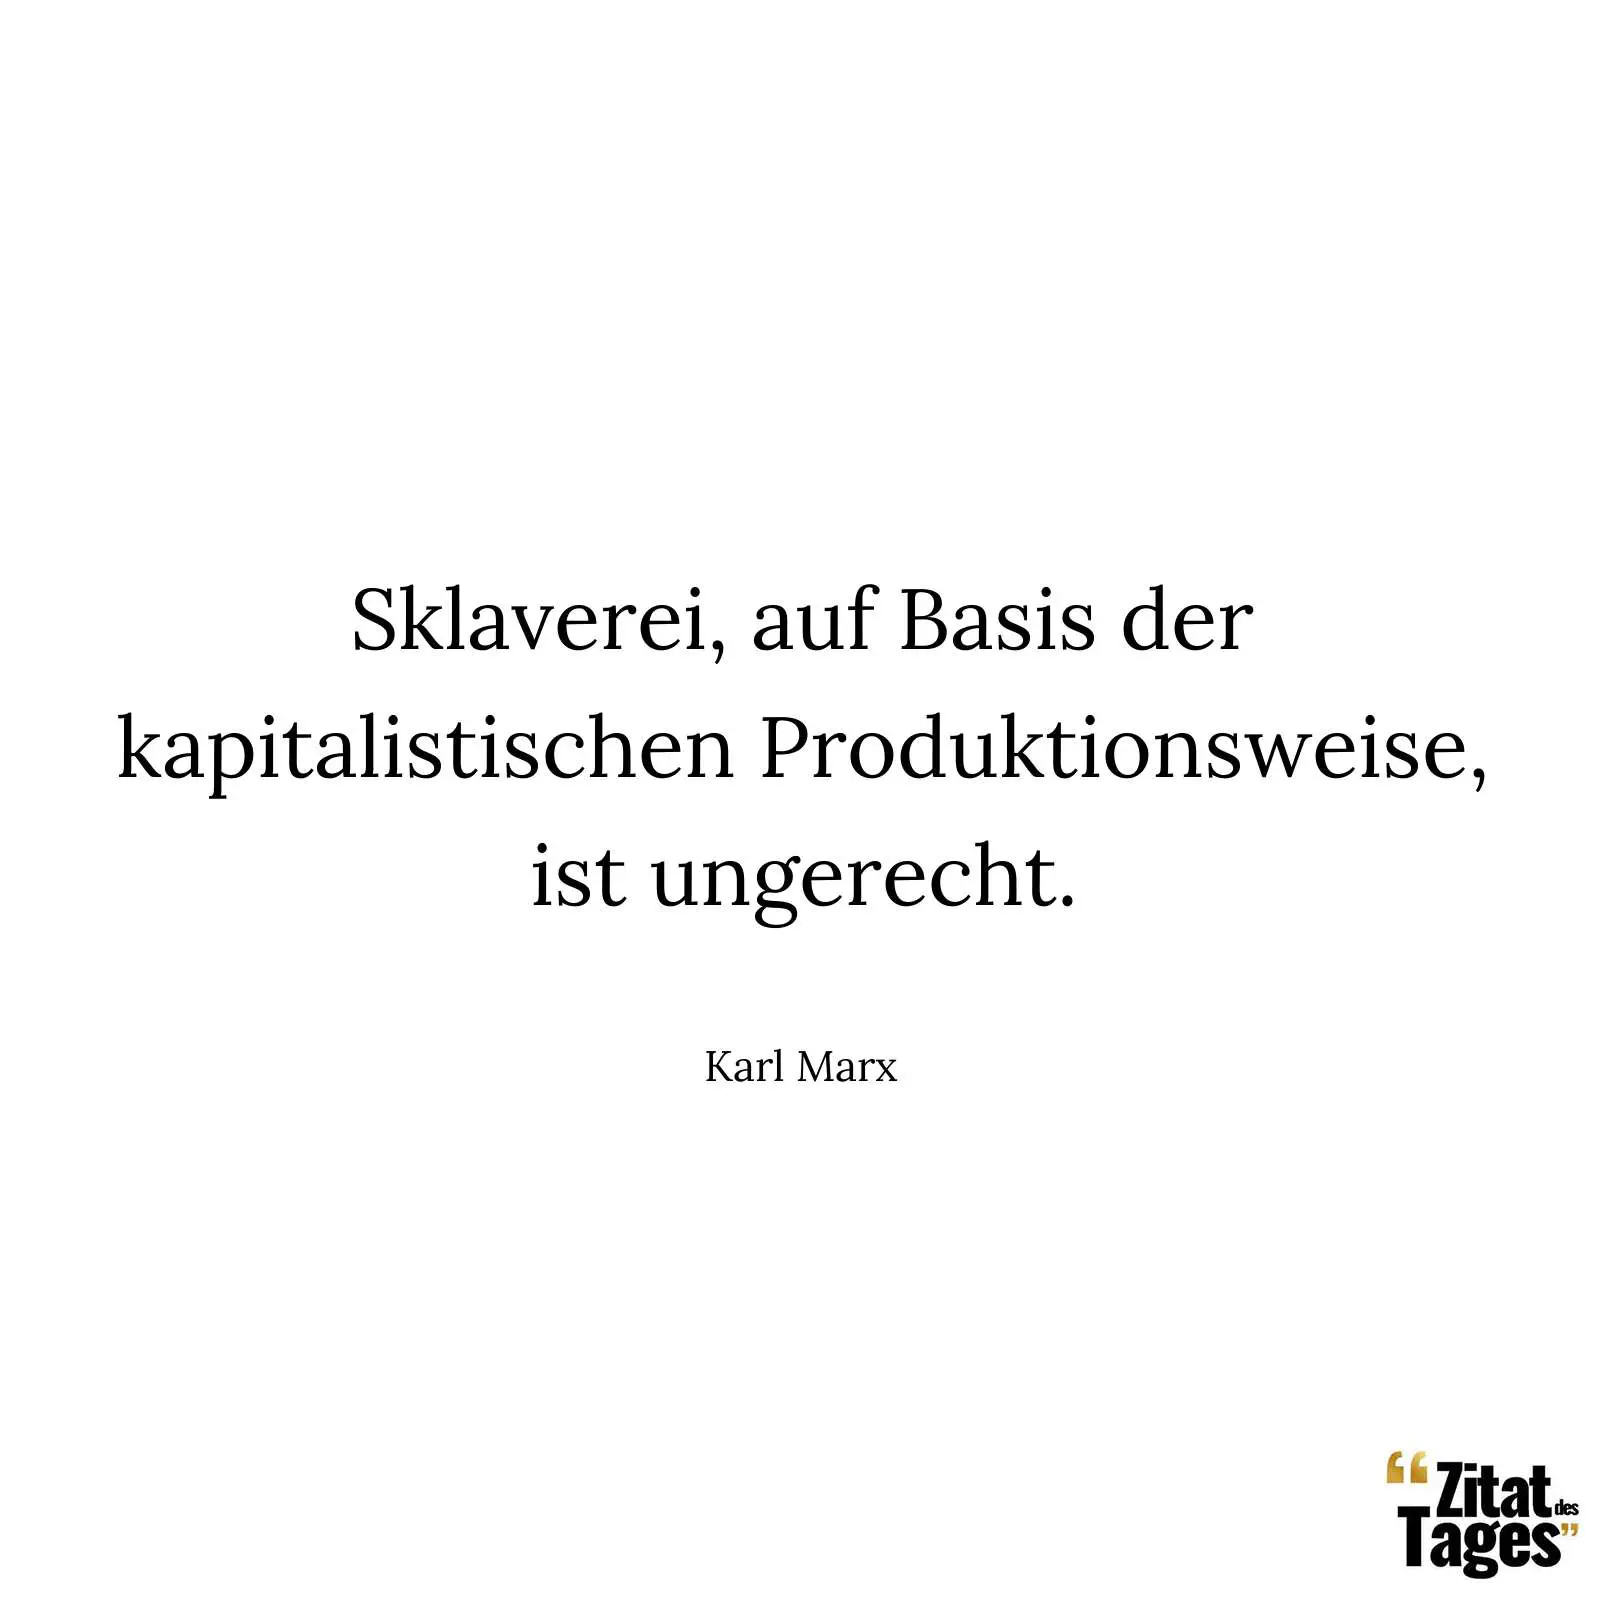 Sklaverei, auf Basis der kapitalistischen Produktionsweise, ist ungerecht. - Karl Marx